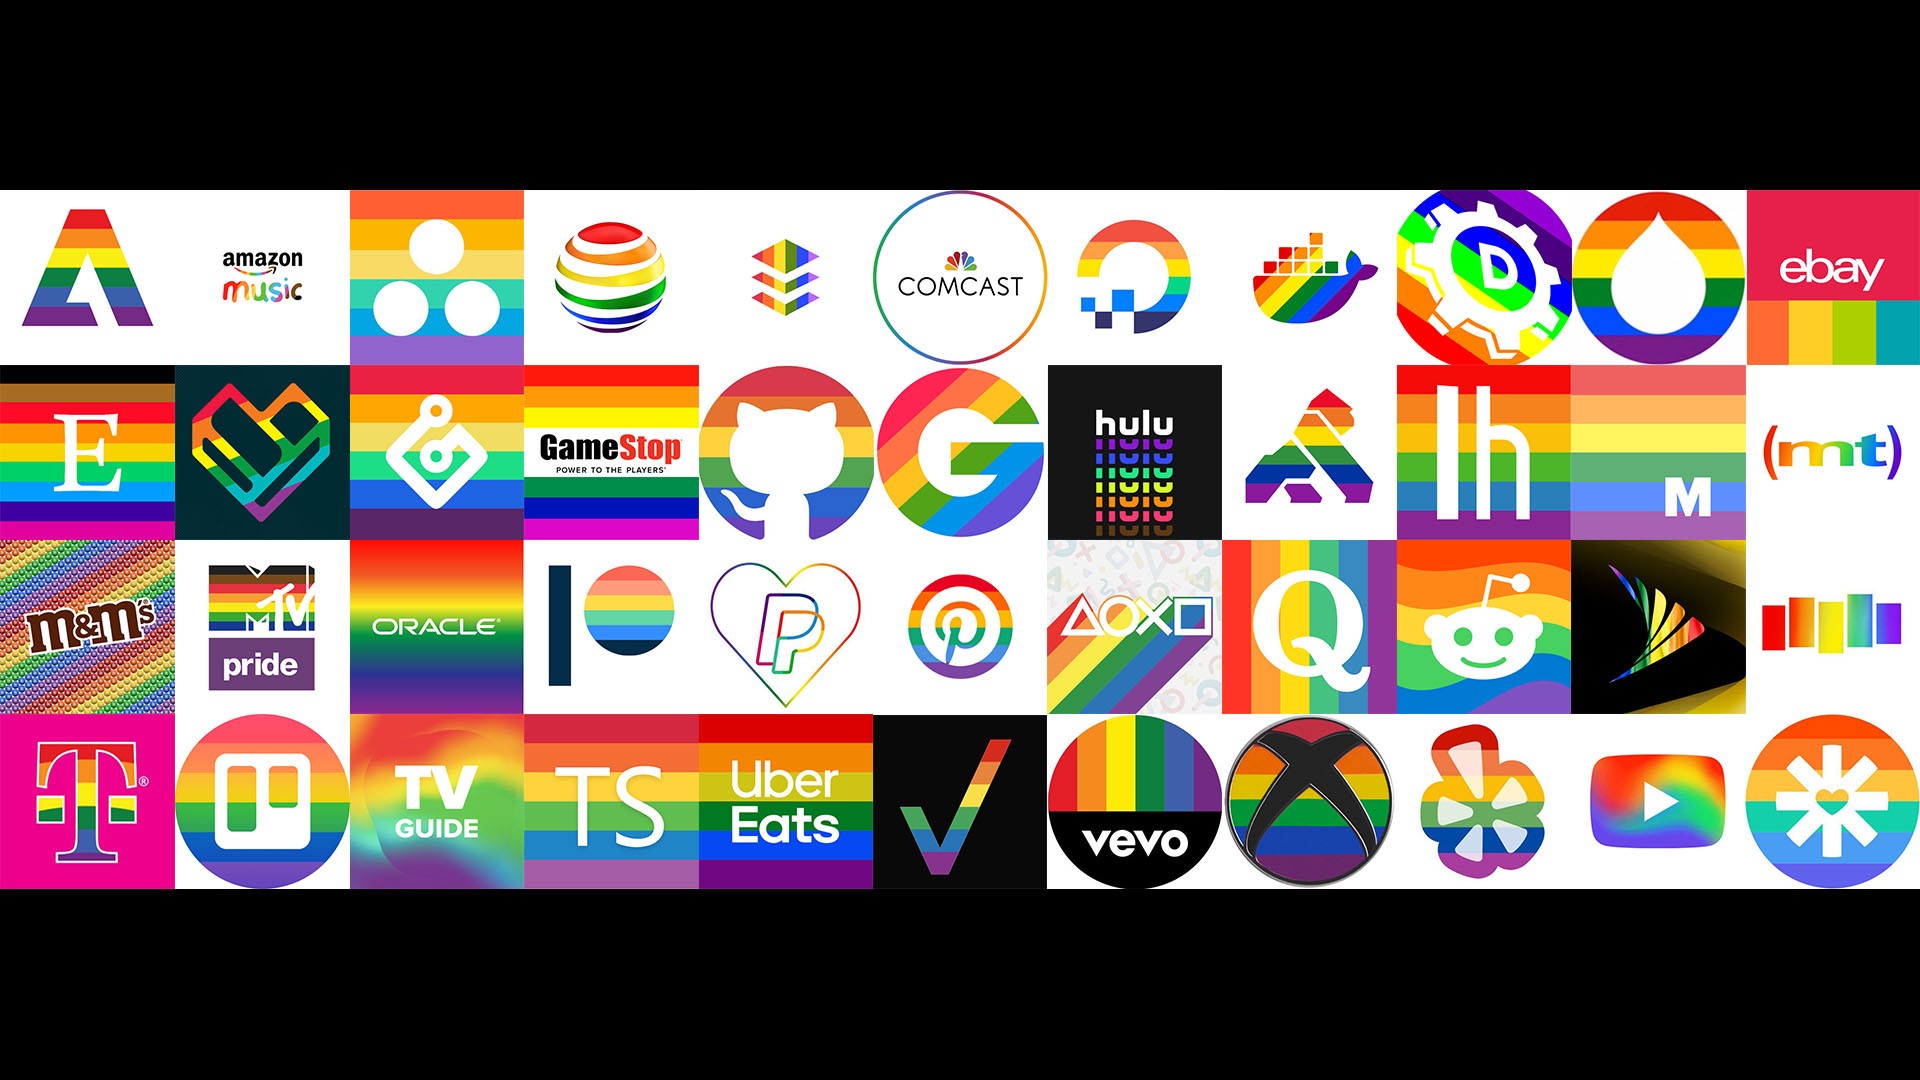 Pride Month Logos